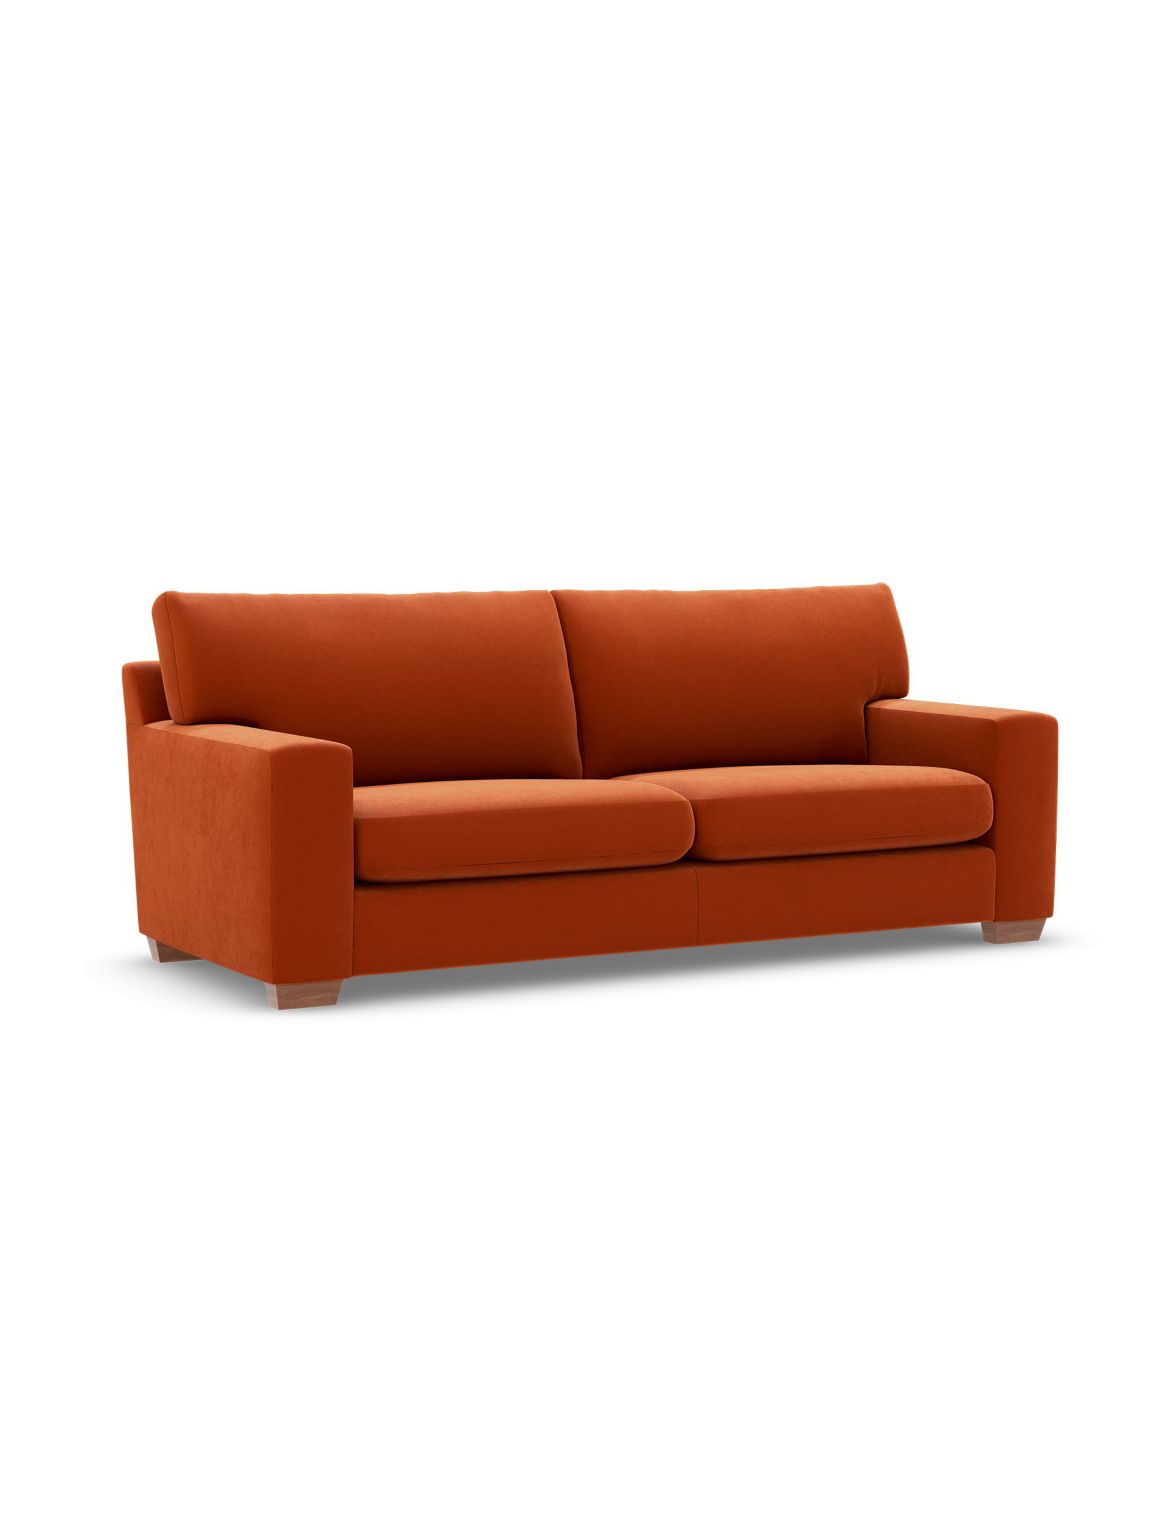 Alfie Large Sofa orange